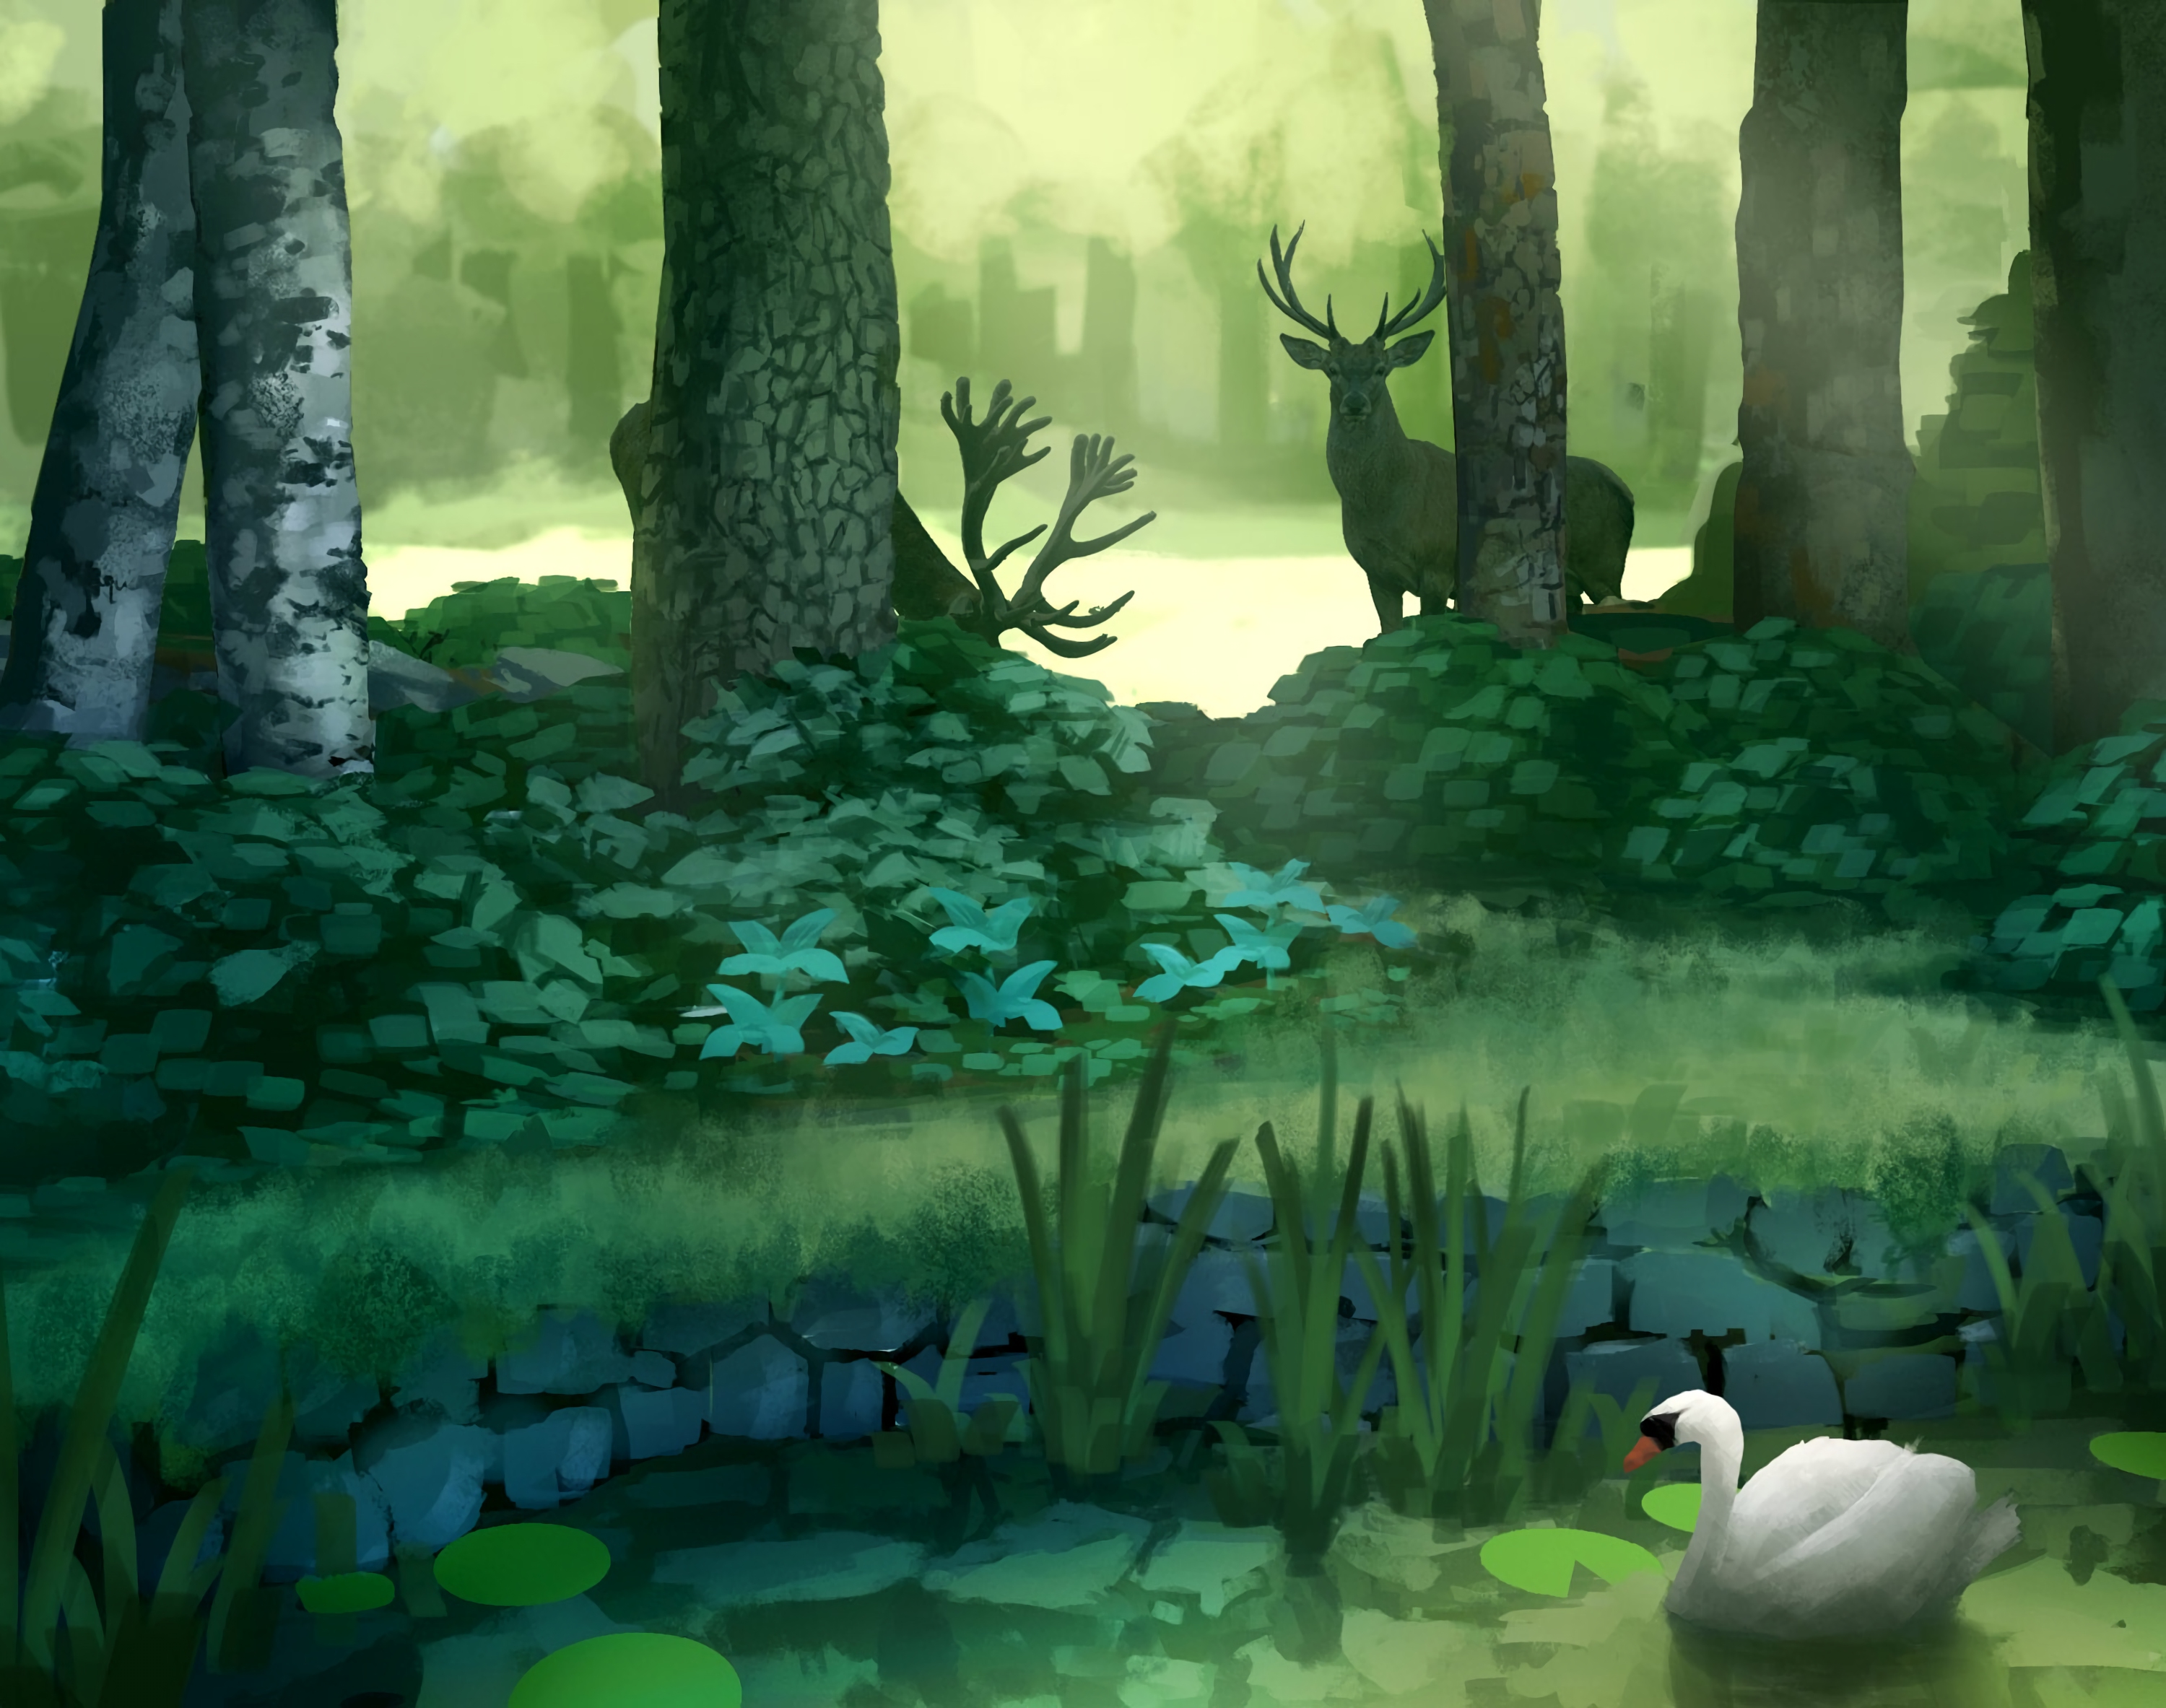 desktop Images deers, trees, art, forest, swan, pond